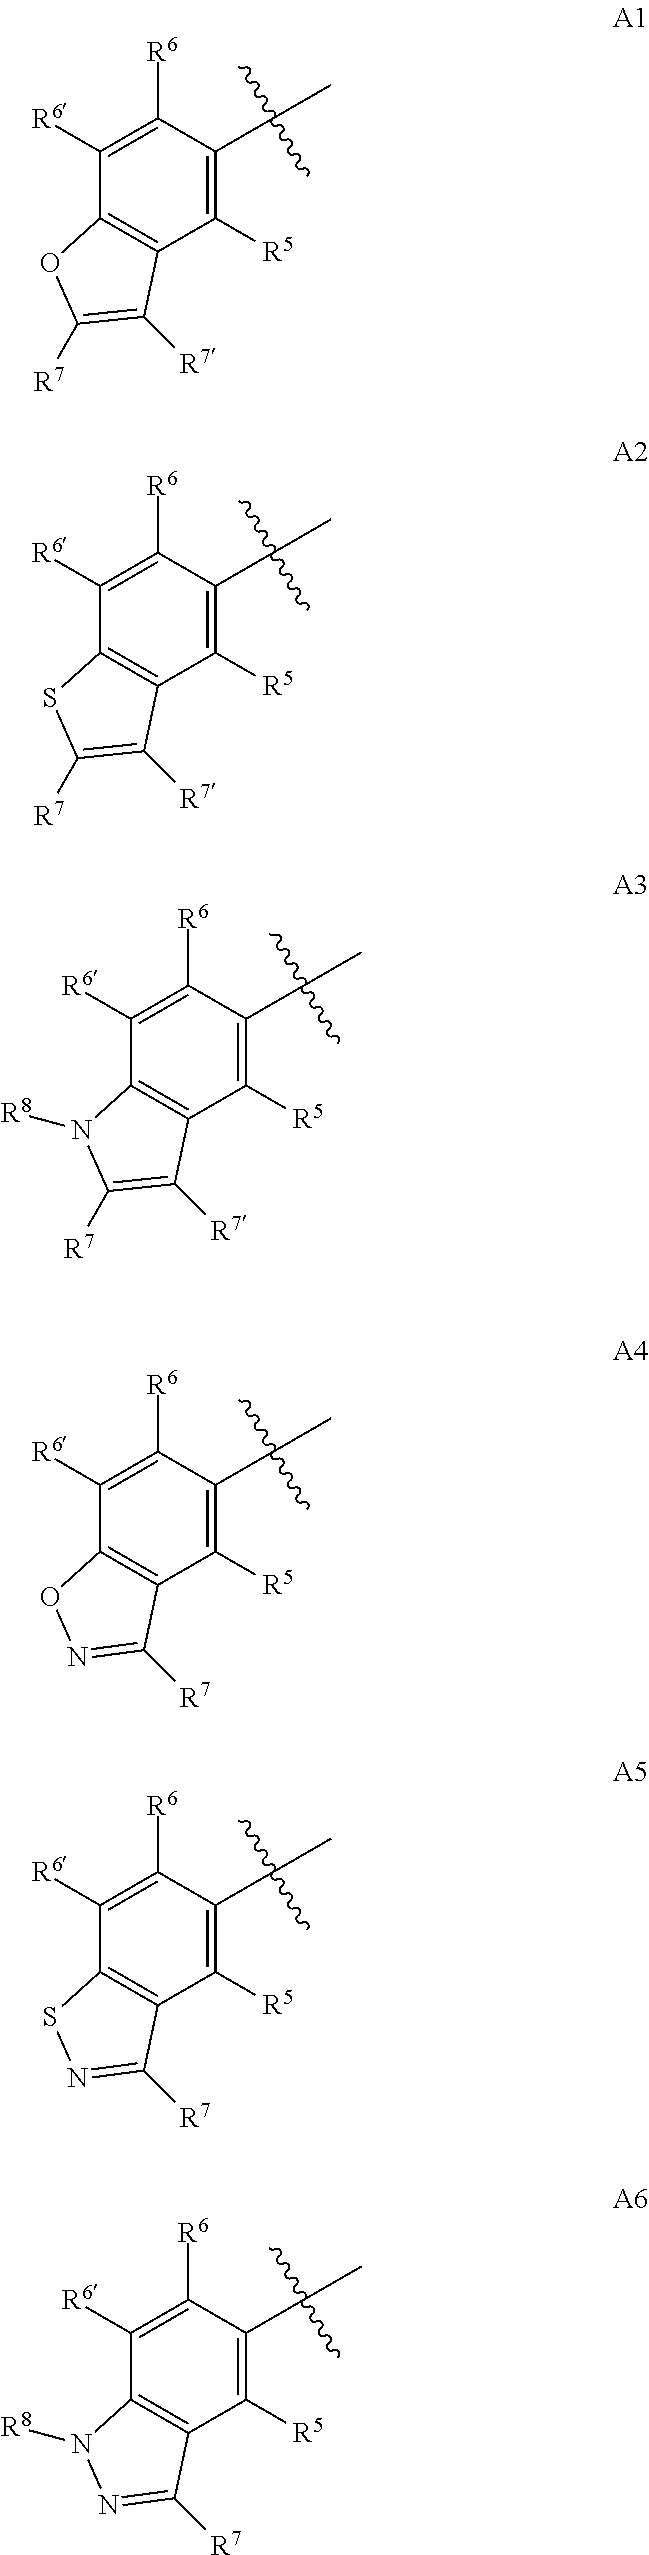 4-AMINO-6-(HETEROCYCLIC)PICOLINATES AND 6-amino-2-(HETEROCYCLIC)pyrimidine-4-carboxylates AND THEIR USE AS HERBICIDES